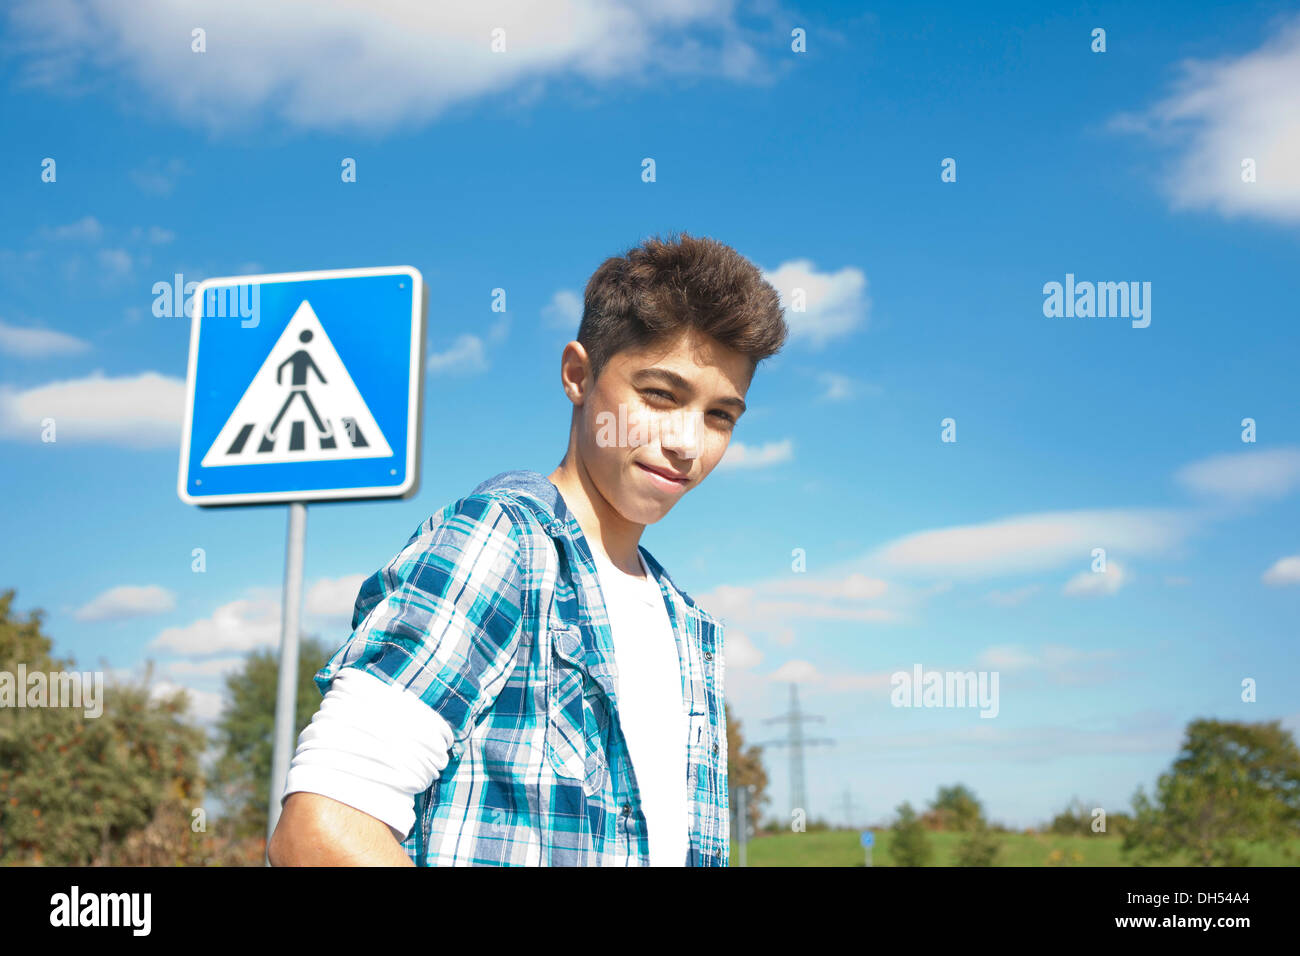 Boy, portrait en face d'une signalisation routière Banque D'Images